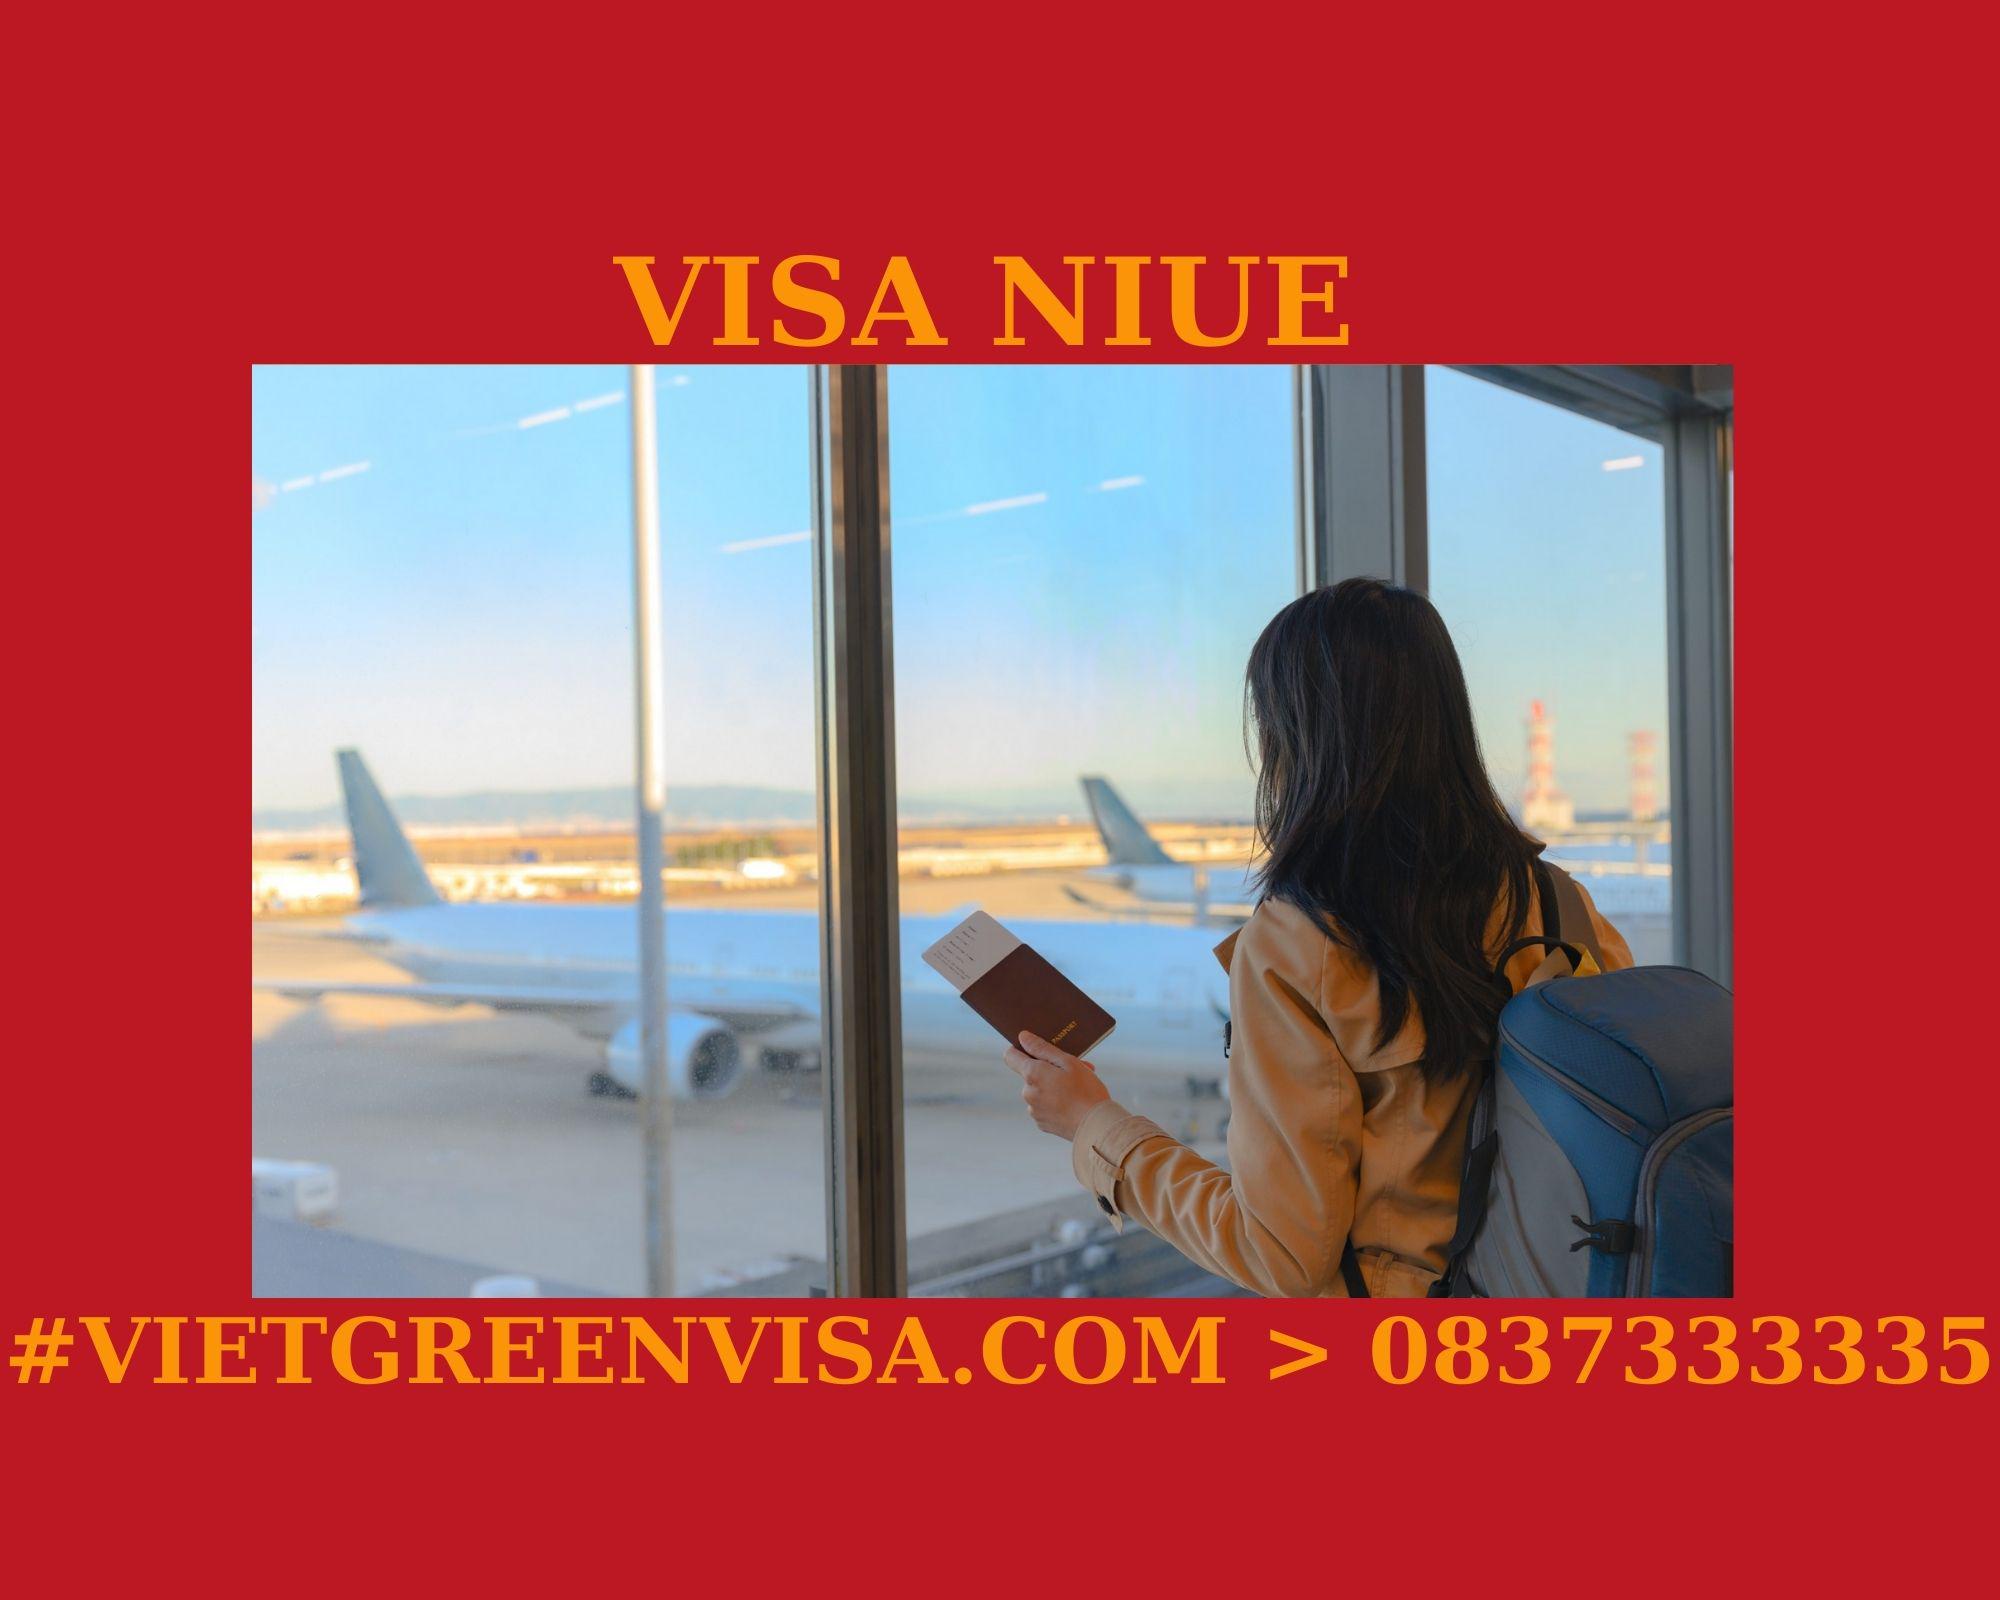 Làm Visa Niue thăm thân uy tín, nhanh chóng, giá rẻ